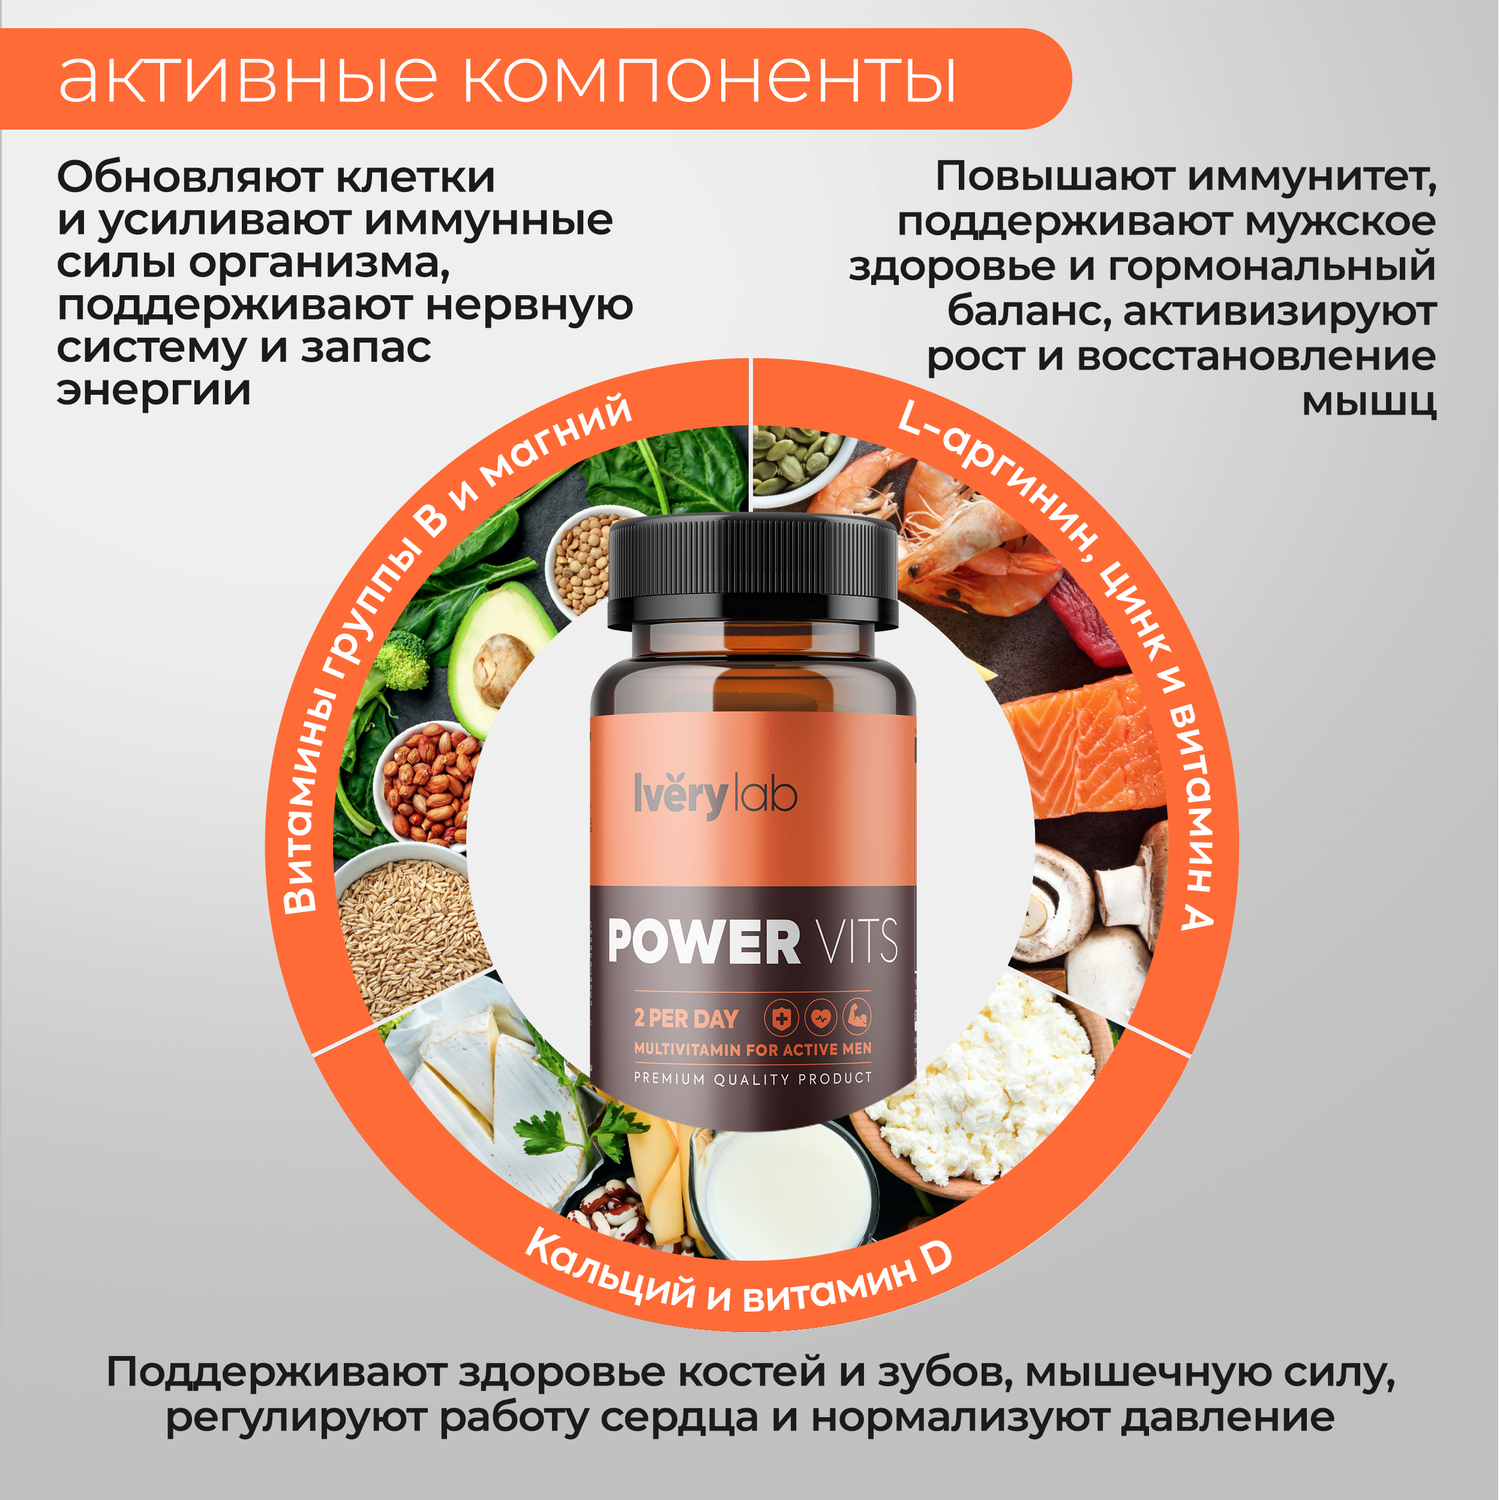 БАД Iverylab Мужской витаминно-минеральный комплекс для здоровья и функциональной поддержки Power Vits - фото 4